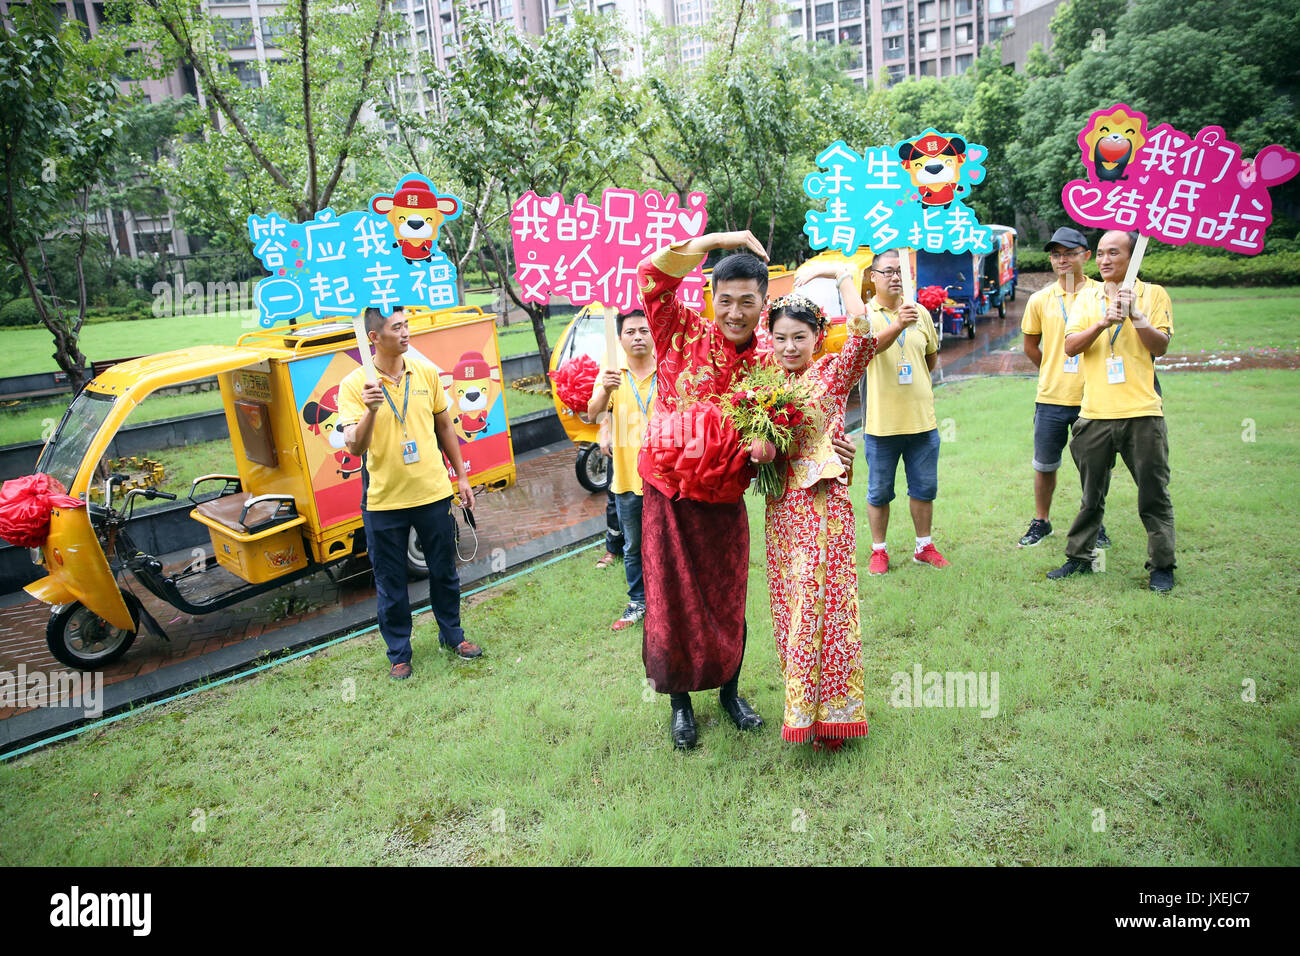 (170816) -- Nanjing, 16 août 2017 (Xinhua) -- l'époux Xu et son épouse posent pour des photos avec des collègues à Nanjing, capitale de la province de Jiangsu, Chine orientale, le 16 août 2017. Xu fonctionne comme un service de messagerie à l'intérieur et ses collègues ont tenu une cérémonie spéciale pour lui avec les véhicules de livraison. (Xinhua/Li Yuze) (ZHS) Banque D'Images